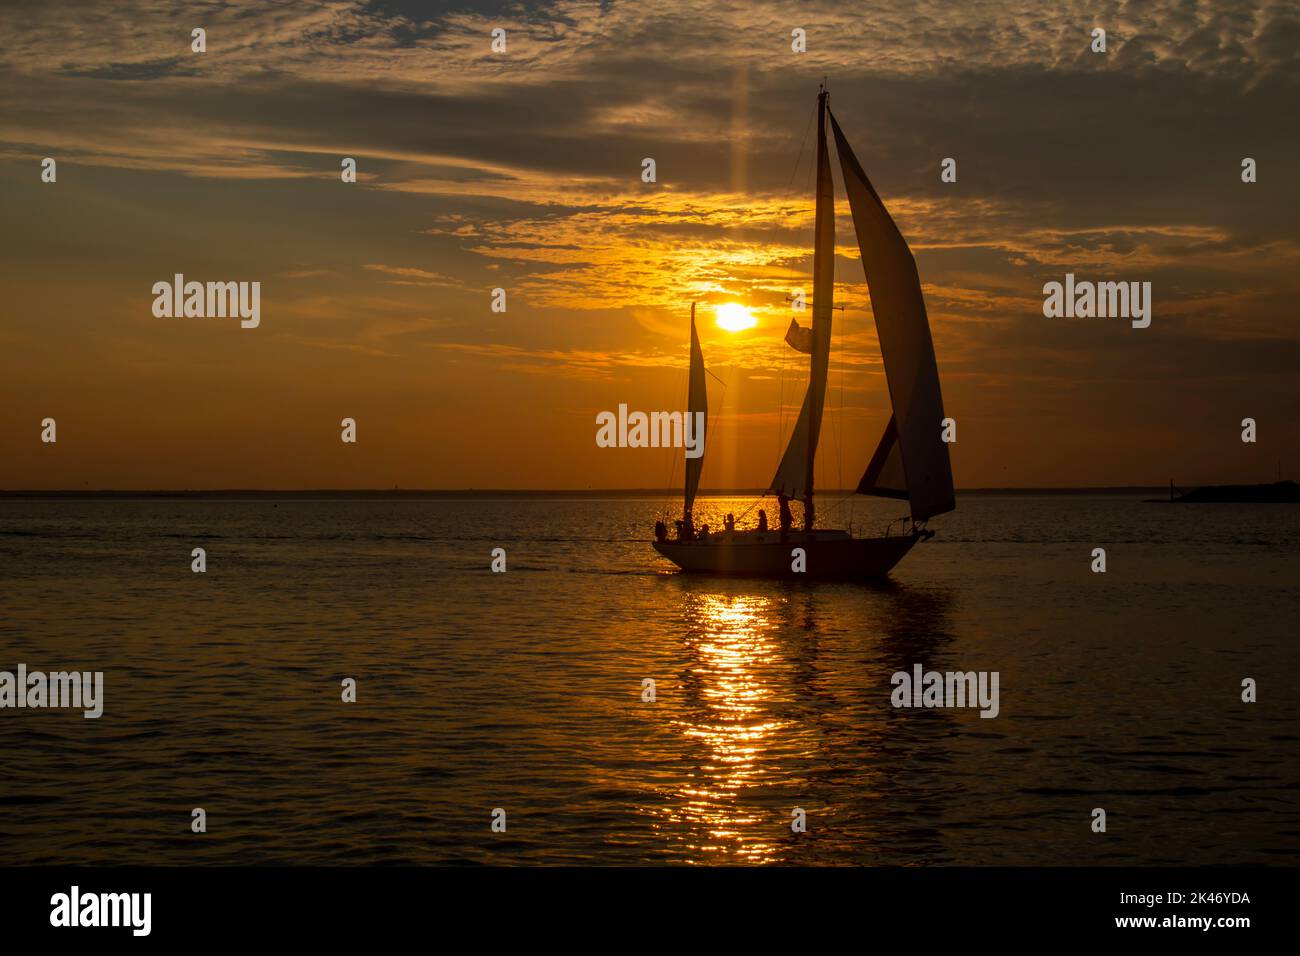 silueta de barco de vela con el sol de la puesta de sol brillante detrás de ella. Foto de stock